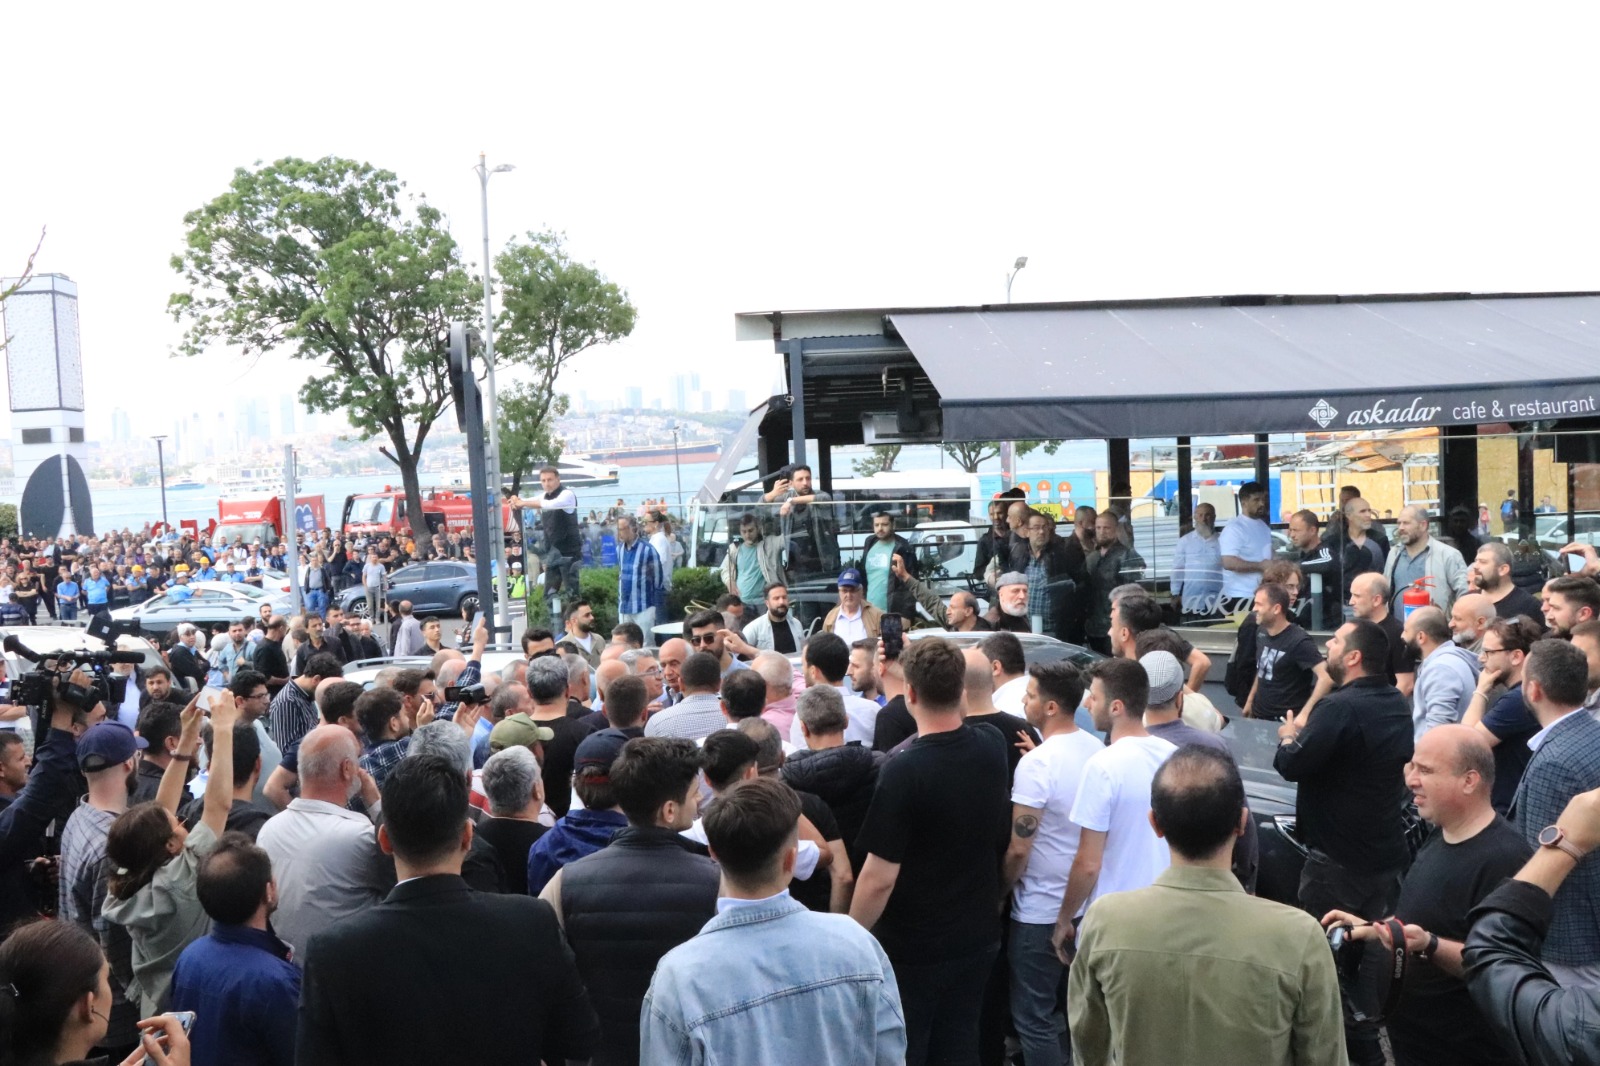 Üsküdar'daki kaçak kafenin yıkımı mahkeme kararıyla durduruldu, kaçak kafeye Türk bayrağı asıldı